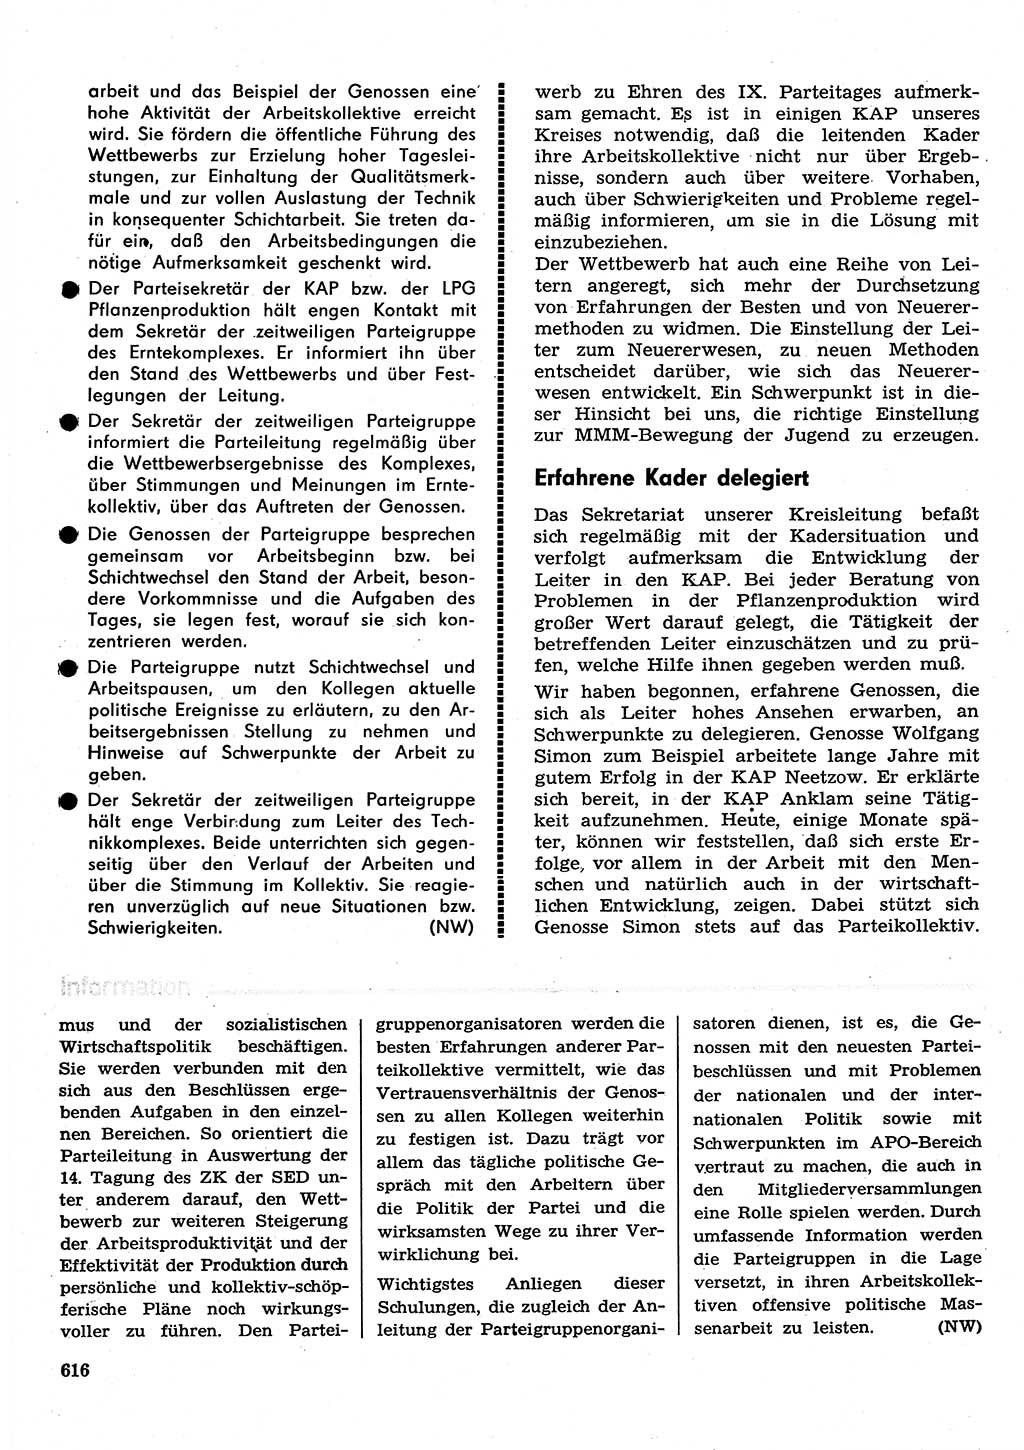 Neuer Weg (NW), Organ des Zentralkomitees (ZK) der SED (Sozialistische Einheitspartei Deutschlands) für Fragen des Parteilebens, 30. Jahrgang [Deutsche Demokratische Republik (DDR)] 1975, Seite 616 (NW ZK SED DDR 1975, S. 616)